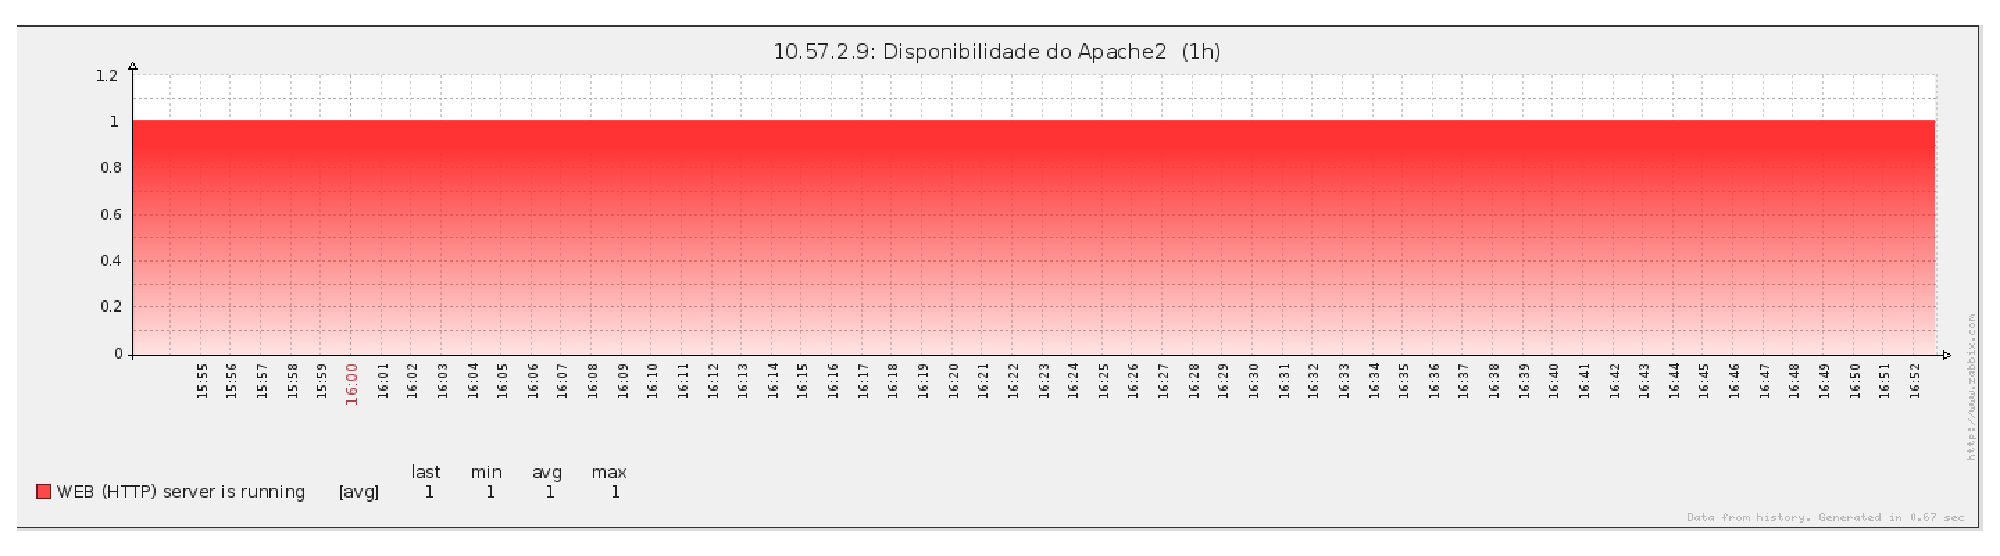 CAPÍTULO 4. RESULTADOS 38 Figura 4.7: Gráfico de disponibilidade do Apache2 no servidor Deathmask. Figura 4.8: Gráfico de disponibilidade do Apache2 monitorando o IP do cluster. 4.2 Reconhecimento de Fala Esta seção do trabalho apresenta os resultados obtidos a partir da utilização de um software desenvolvido sobre a plataforma Android 2.